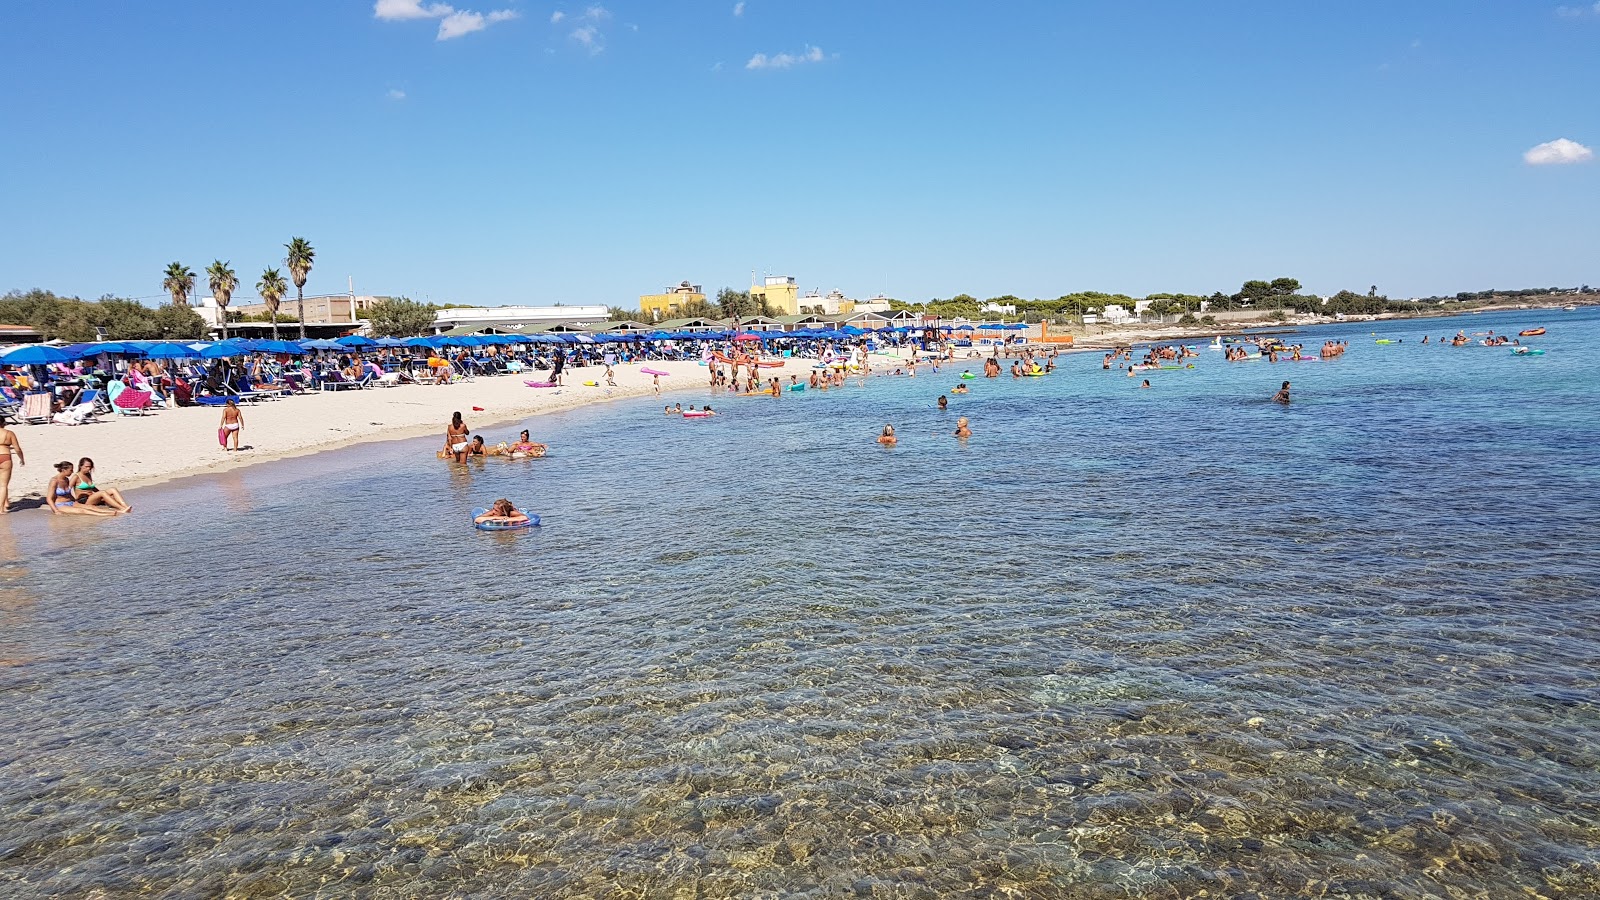 Foto von Spiaggia Ufficiali mit brauner sand&steine Oberfläche